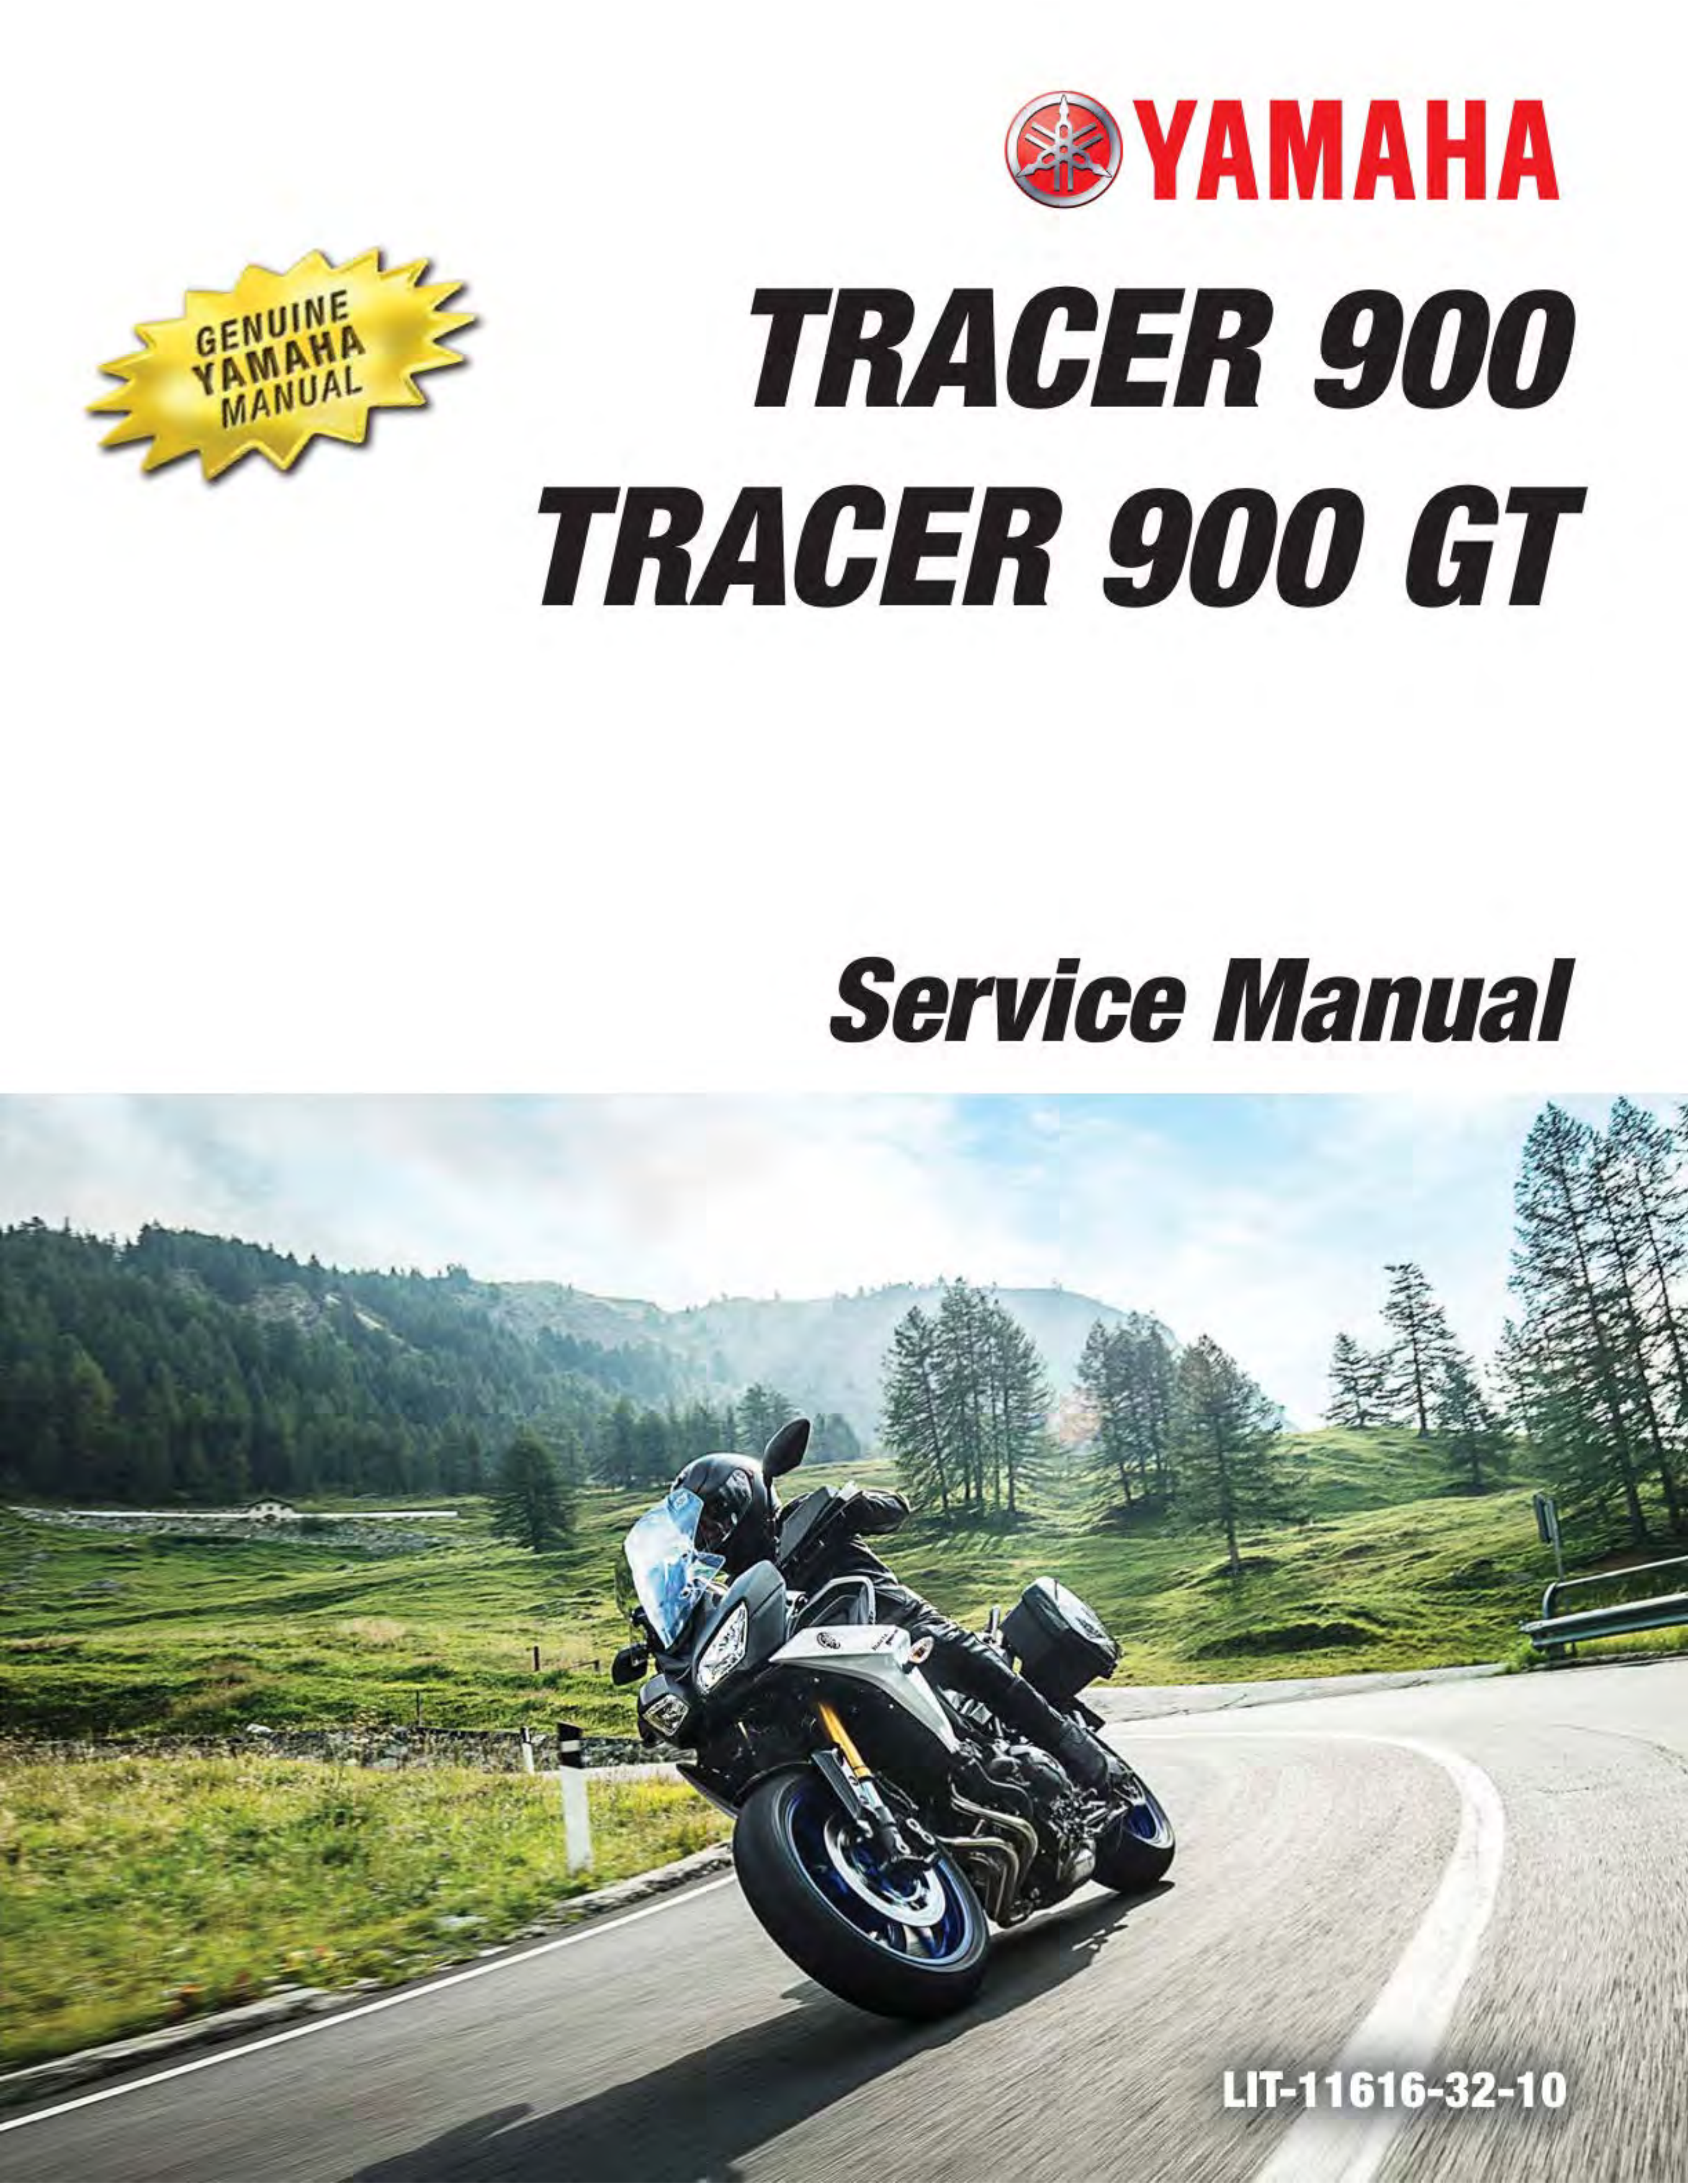 原版英文2019-2020年雅马哈tracer900维修手册tracer900 gt维修手册图片版pdf插图